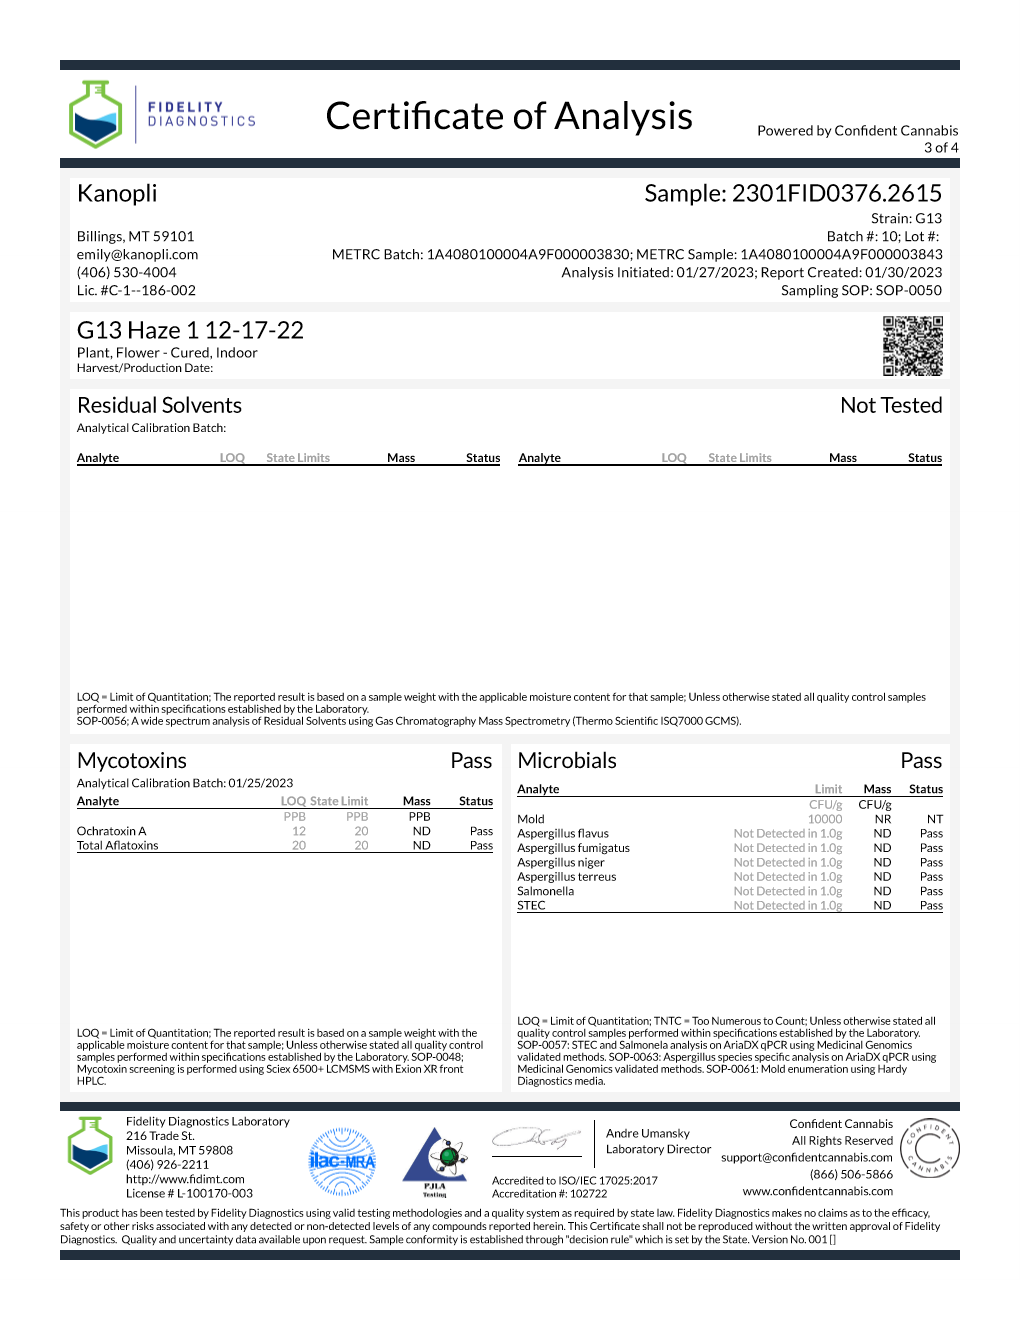 G13 Haze shaker - Hybrid (19.06% THC) Dec. 2022 - 4 grams